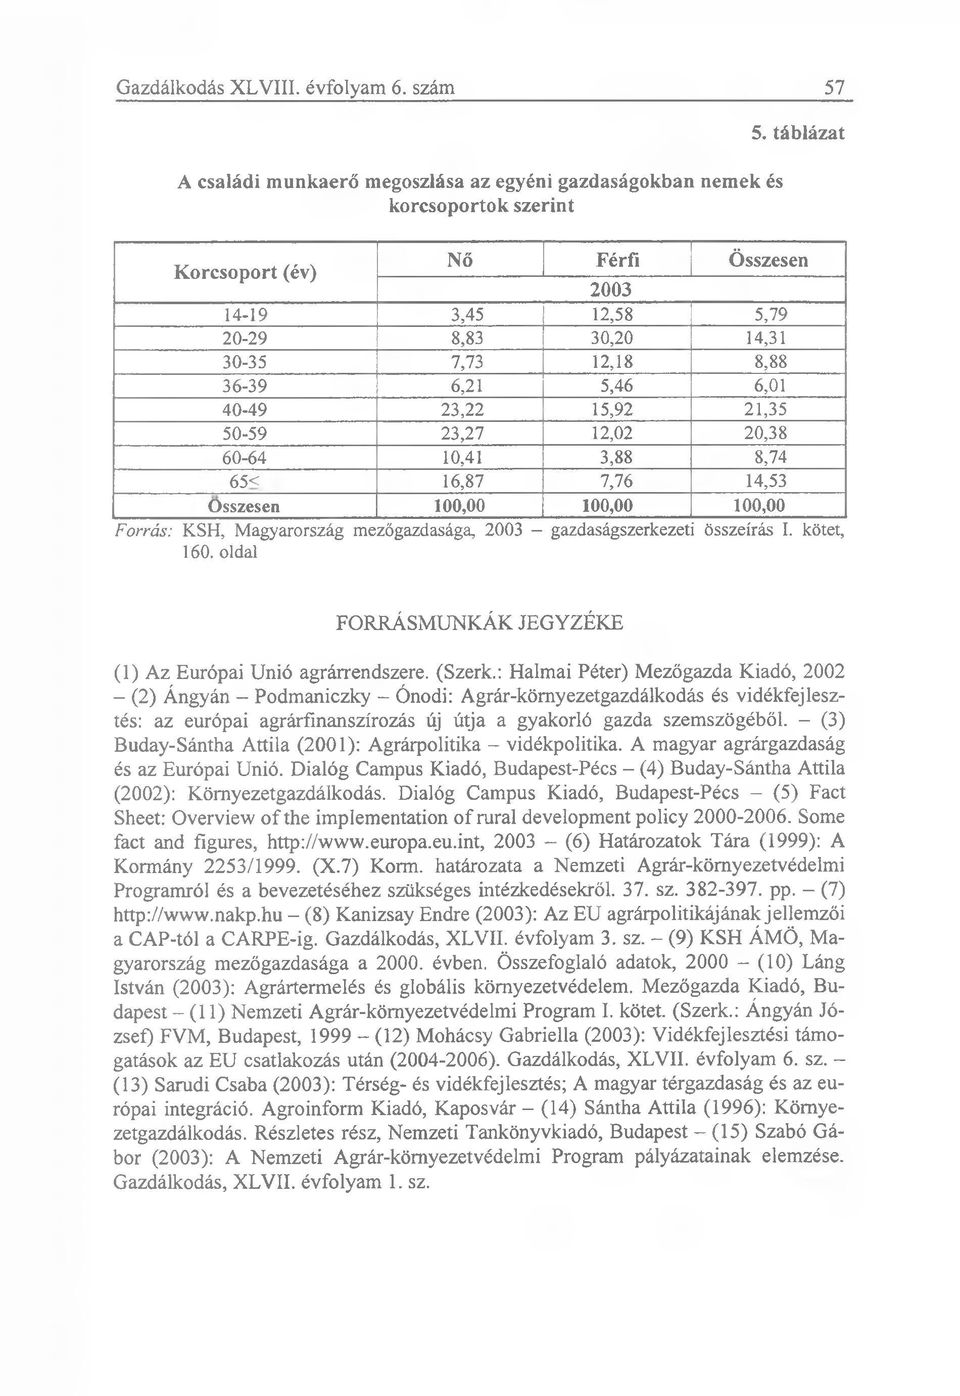 3,88 8,74 65< 16,87 7,76 14,53 Összesen 100,00 100,00 100,00 Forrás: KSH, Magyarország mezőgazdasága, 2003 - gazdaságszerkezeti összeírás I. kötet, 160.